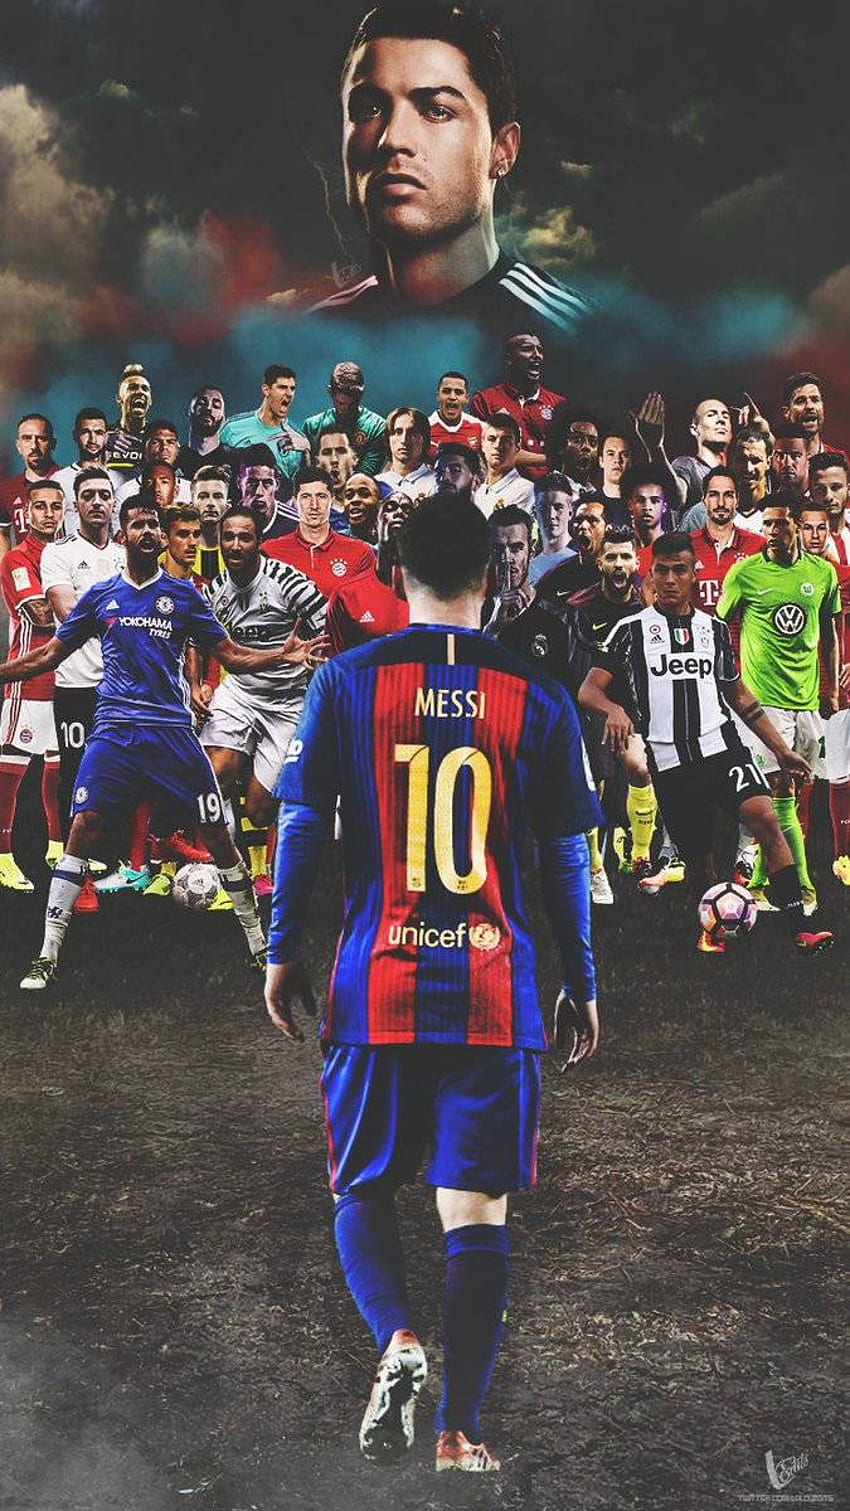 Messi - Để mọi người lại háo hức bước vào những bức ảnh về Messi, khiến cho trái tim của các fan hâm mộ sẽ phải nhảy múa và đầy cảm xúc. Đó là ngôi sao sáng nhất trong lịch sử của bóng đá Argentina, và bạn không muốn bỏ lỡ một bức ảnh của anh ấy đúng không?